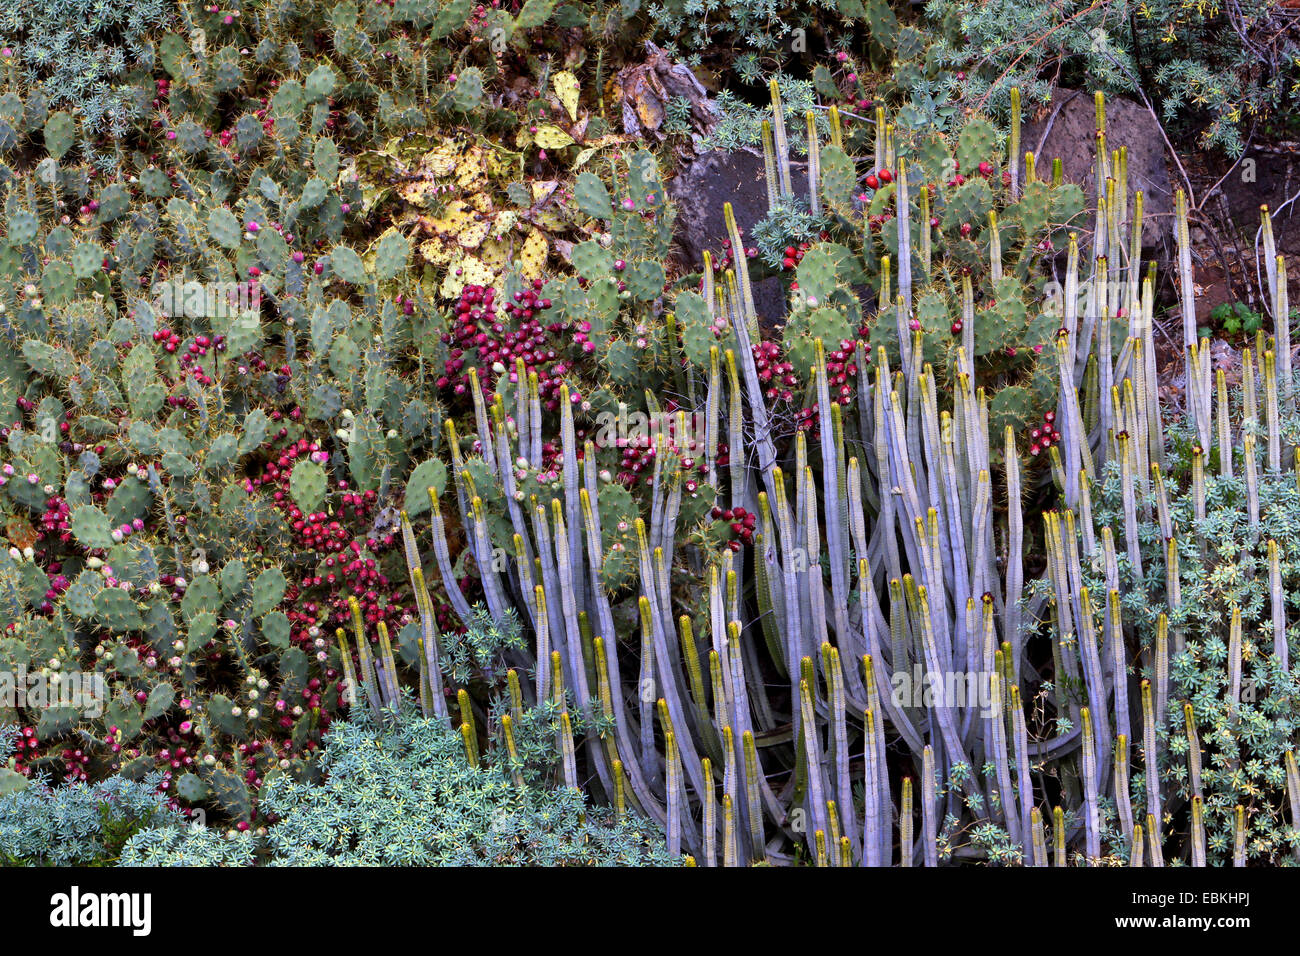 La vegetación típica del norte de la isla con Opuntia y Euphorbiaceae, Islas Canarias, Tenerife, Buenavista del Norte Foto de stock